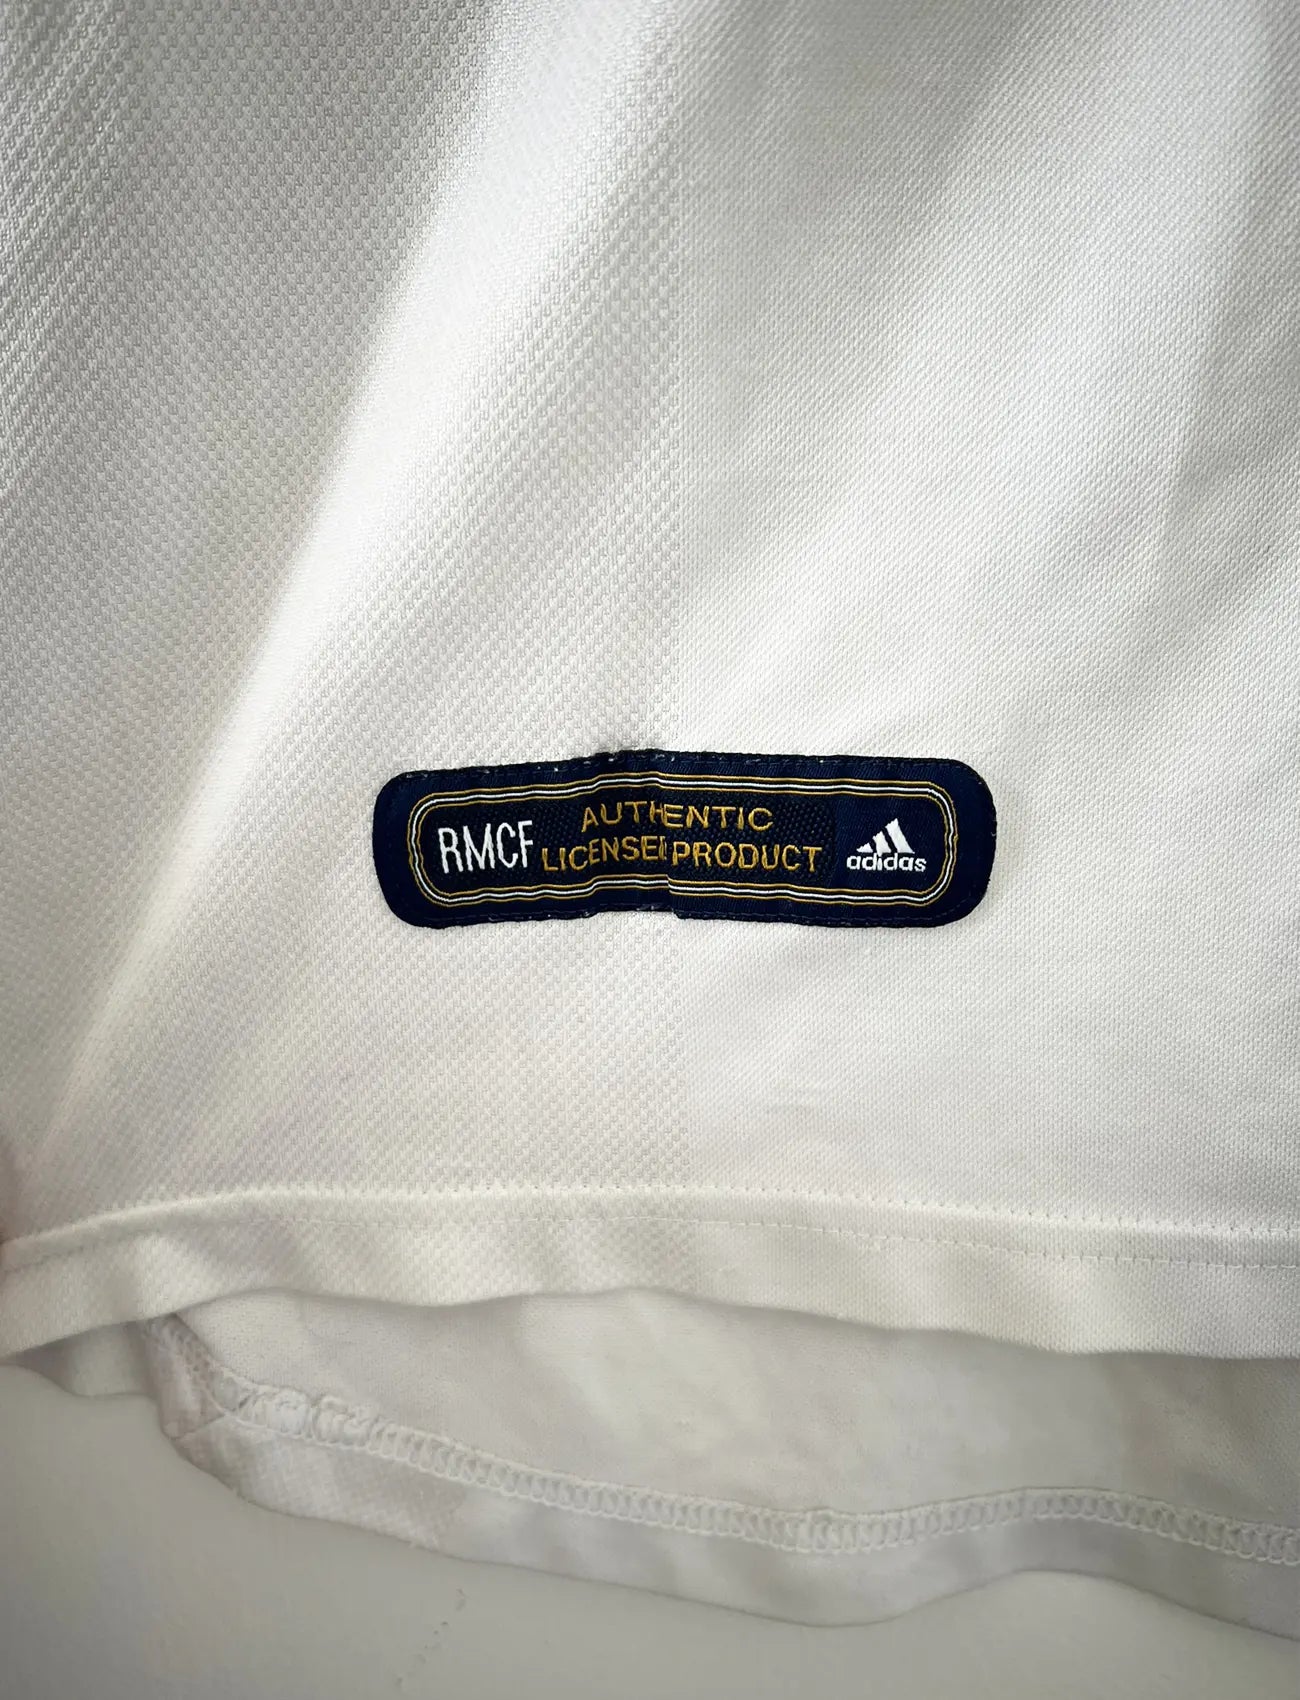 Maillot de foot vintage domicile du real madrid de la saison 2001-2002. Le maillot est de couleur blanc et noir. On peut retrouver l'équipementier adidas et le sponsor Real Madrid.com. Le maillot est floqué du numéro 5 Zinedine Zidane. Il s'agit d'un maillot authentique comportant les numéros 695856